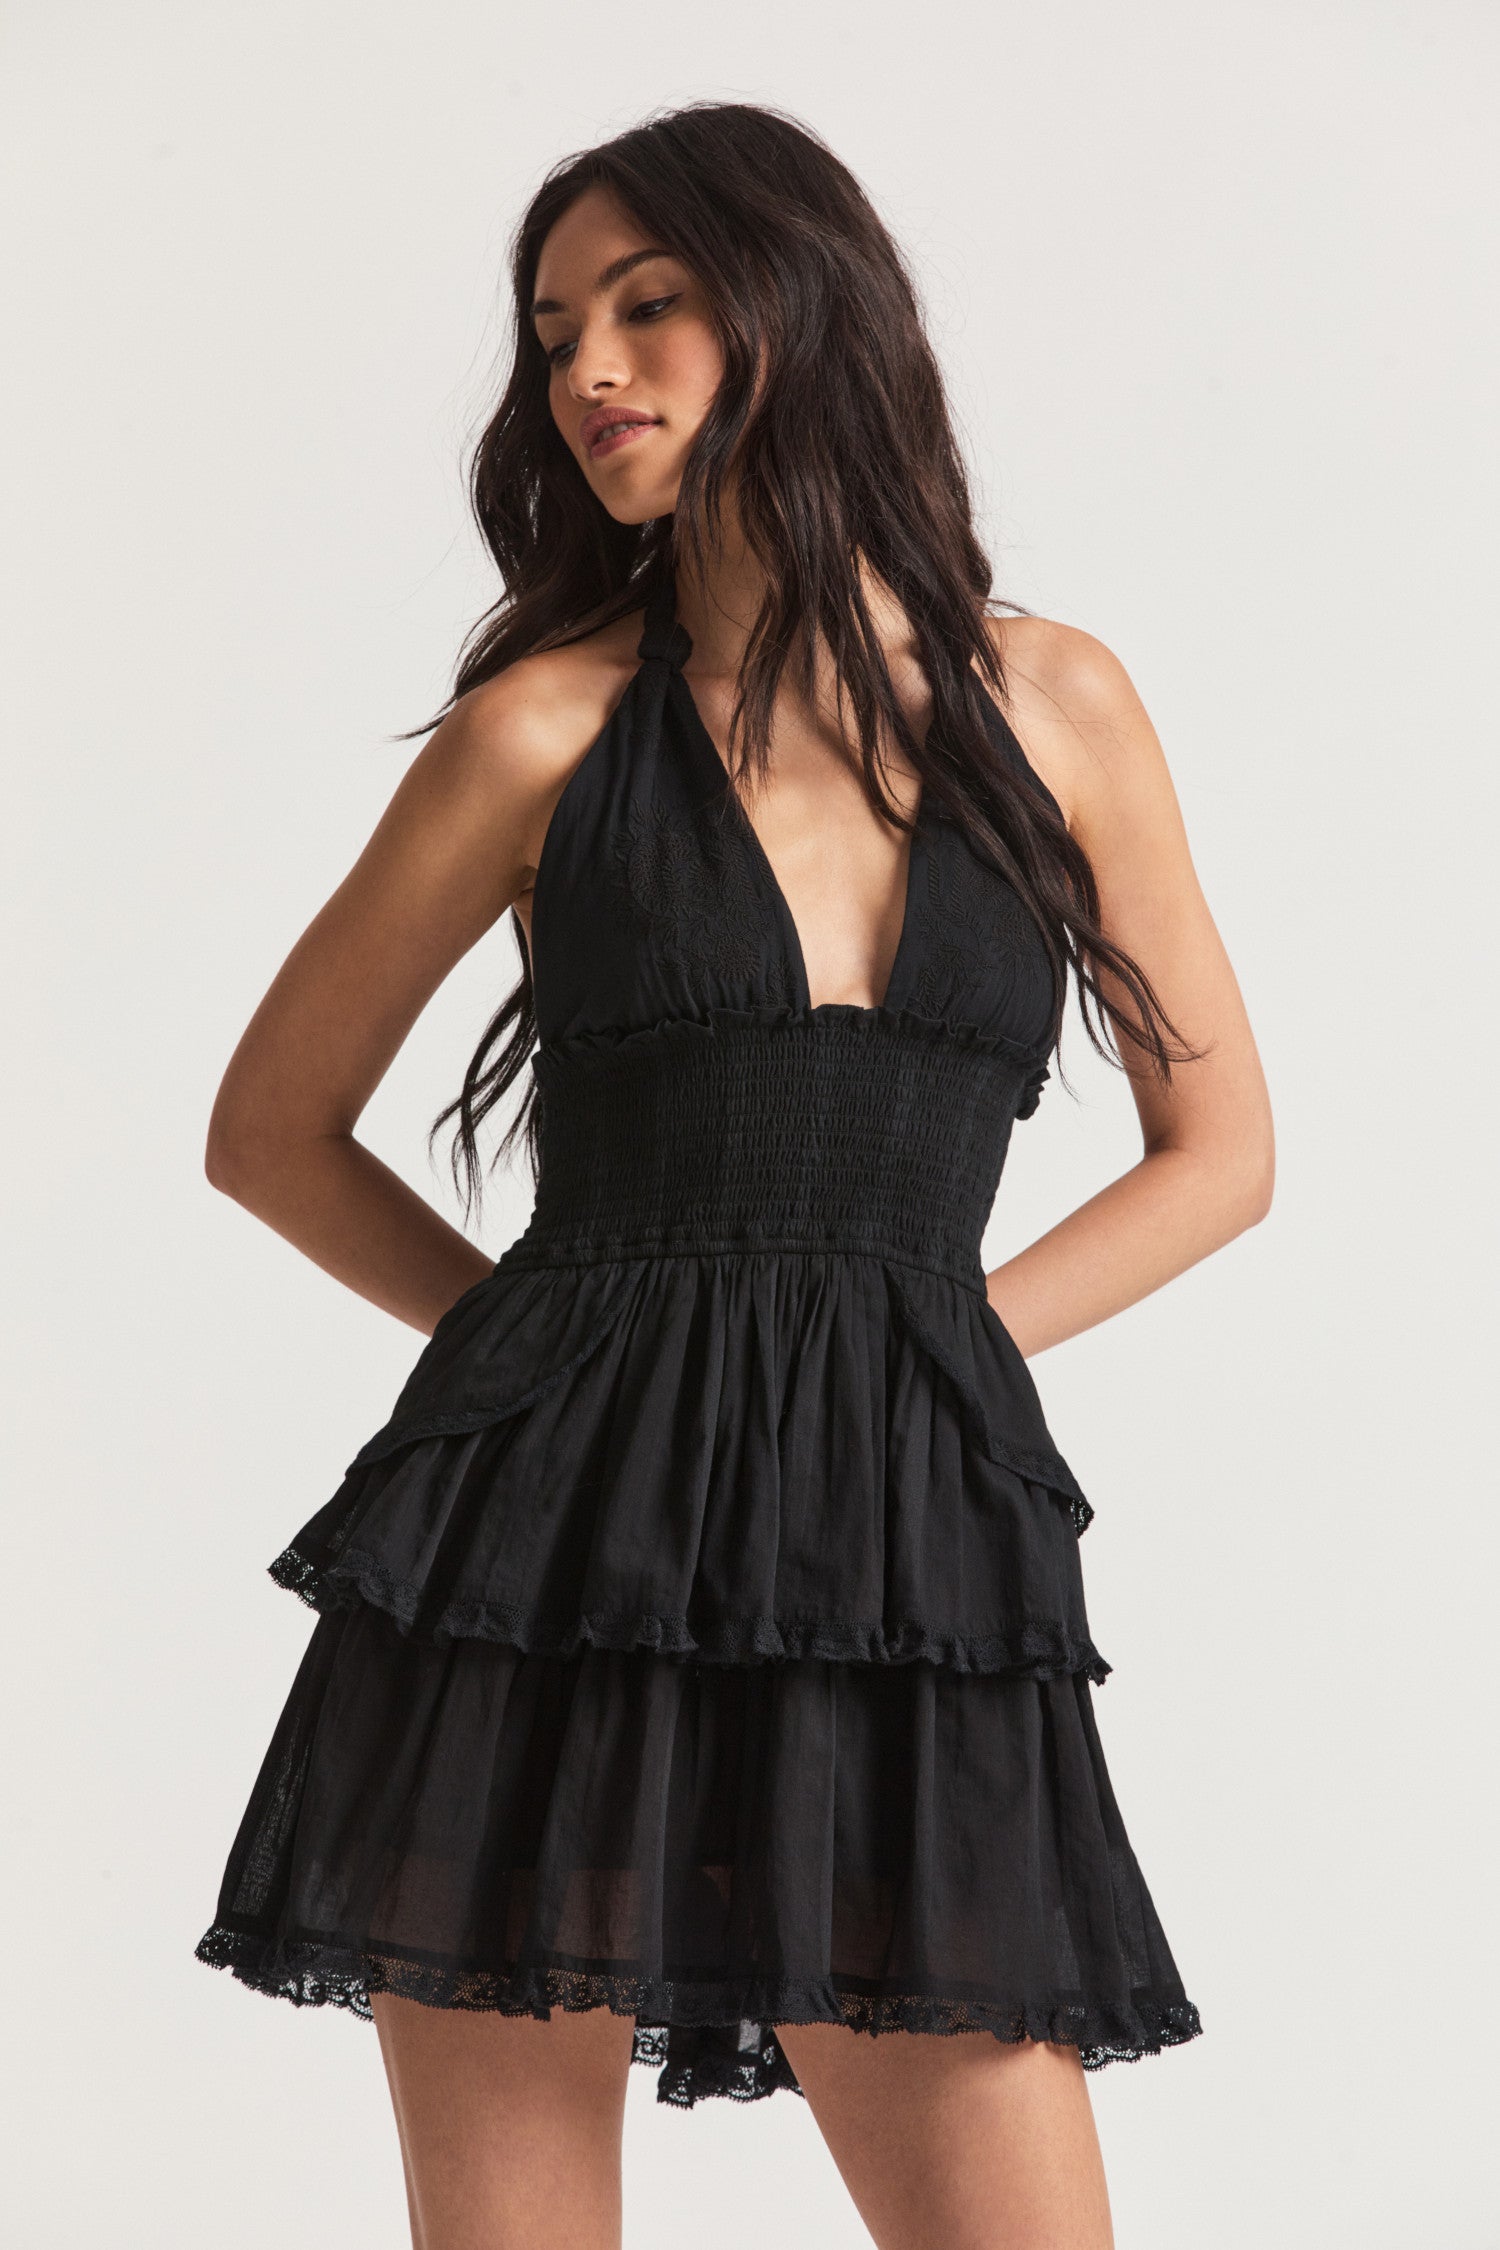 Deanna Halter Black Mini Dress - Women's Designer Dresses